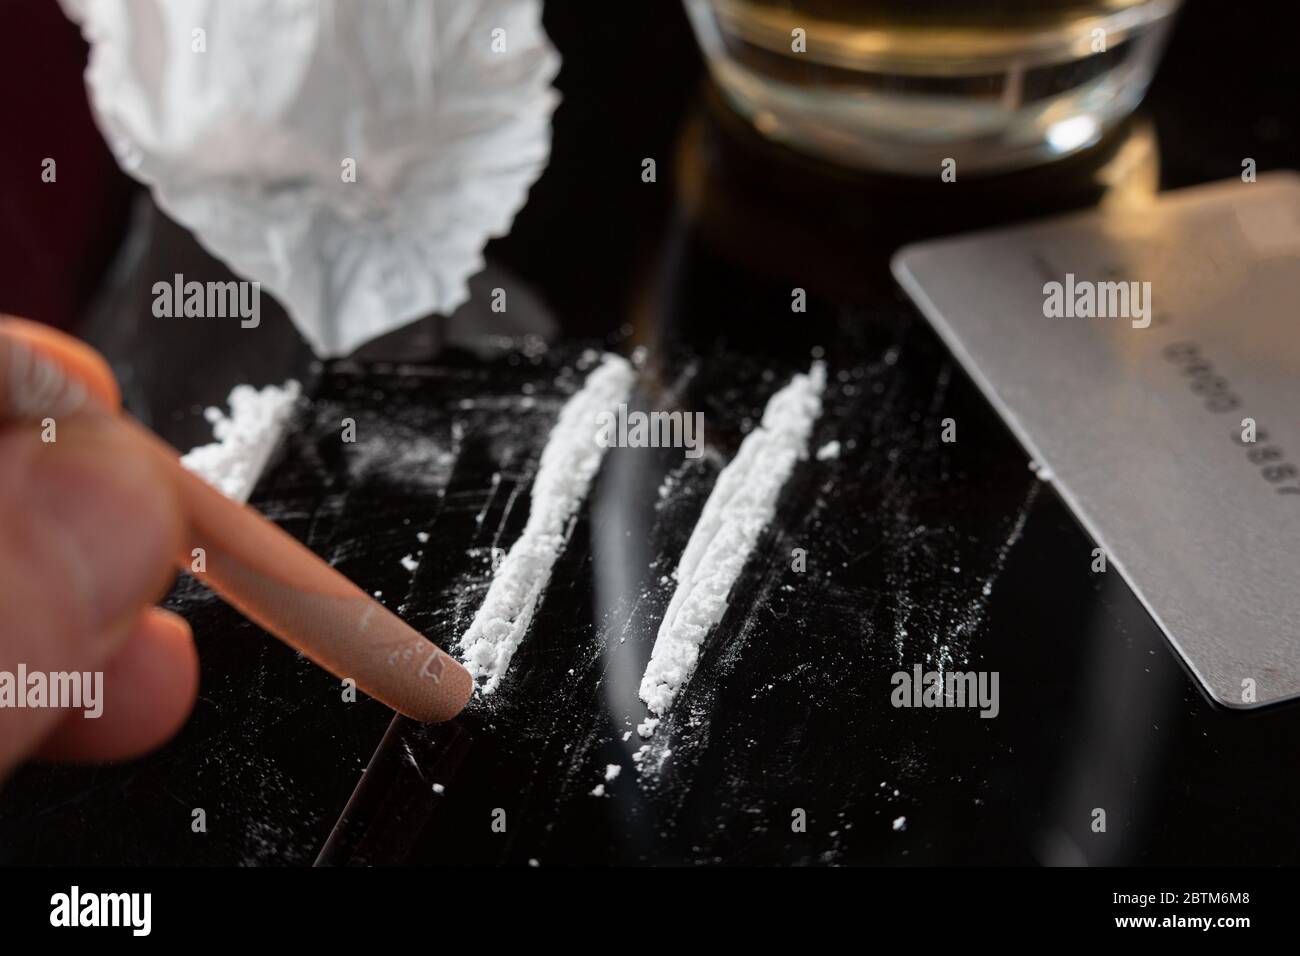 https://c8.alamy.com/compes/2btm6m8/lineas-de-cocaina-preparadas-sobre-una-mesa-y-un-billete-enrollado-listo-para-ser-esnifado-2btm6m8.jpg